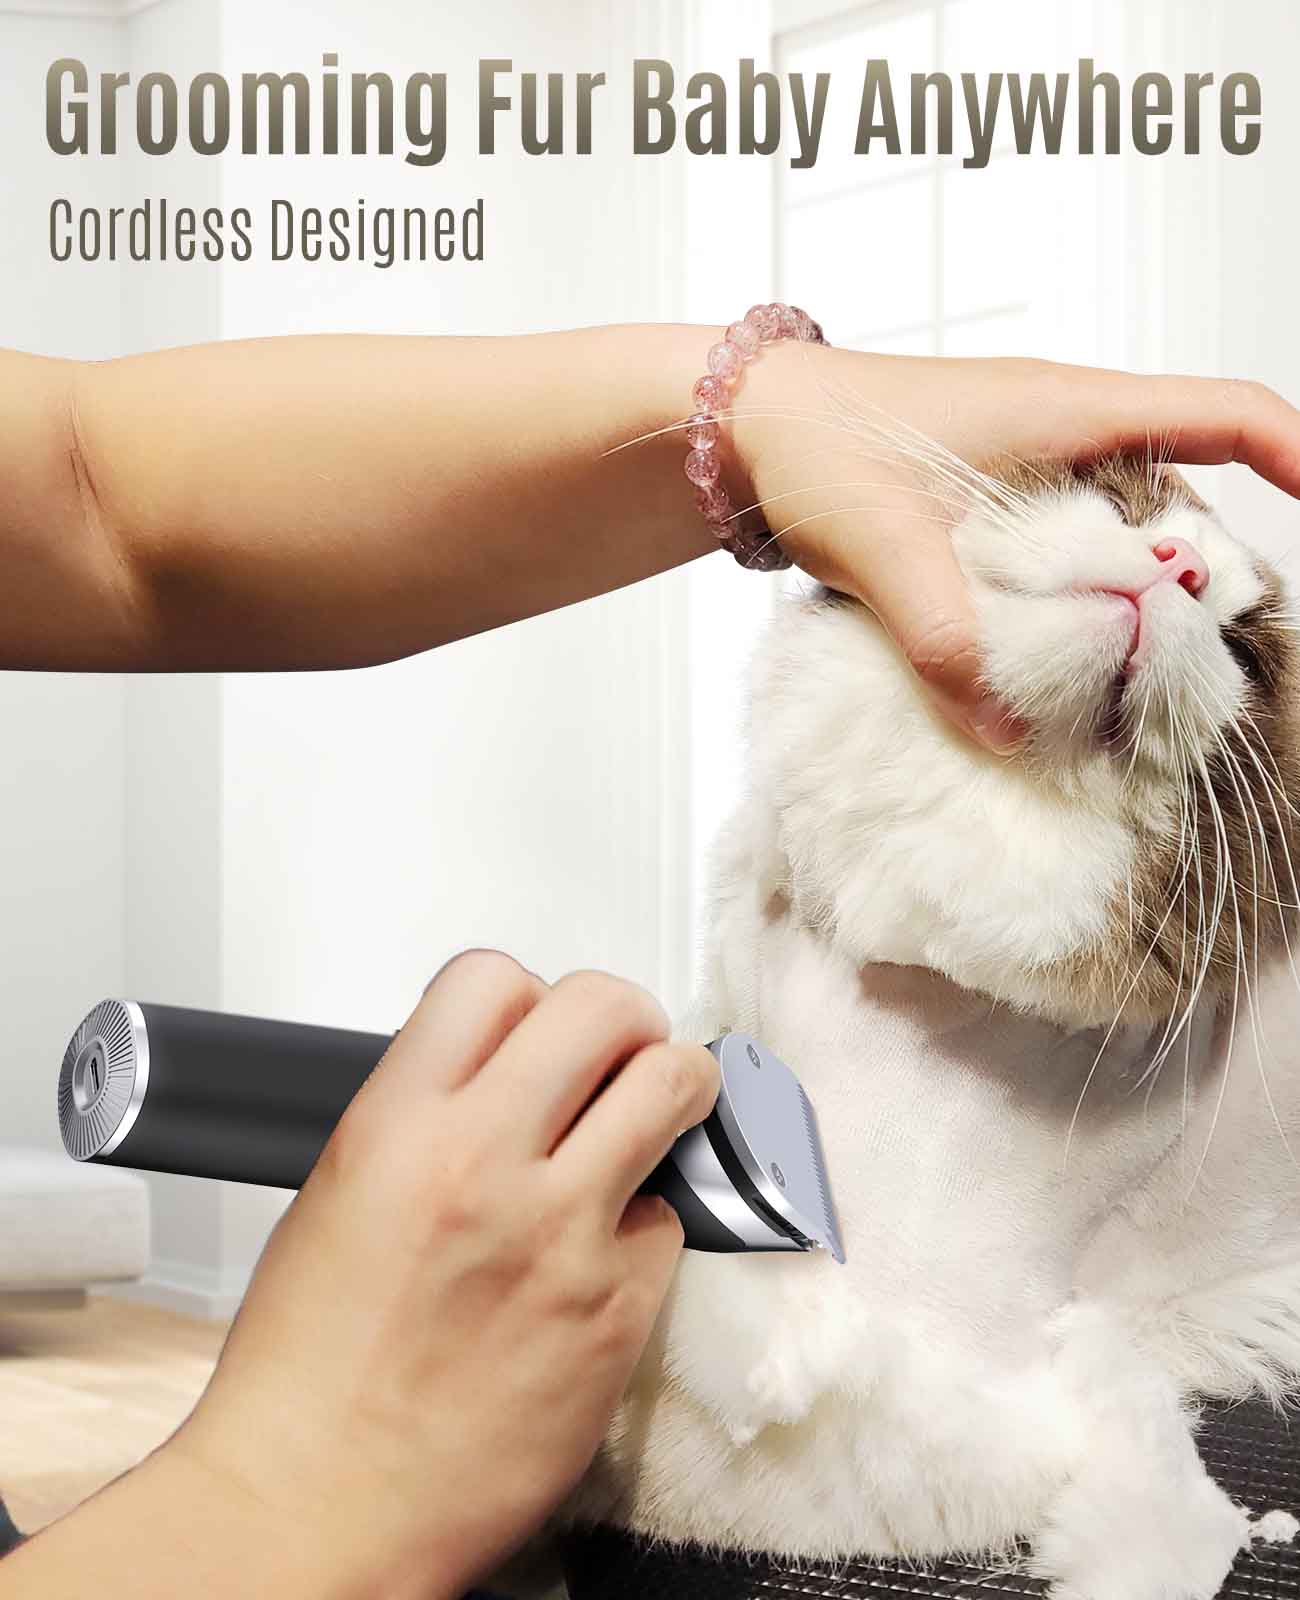 
                  
                    Oneisall Katzenschermaschine, geräuscharme Katzenpflege-Haarschneidemaschine für verfilztes langes Haar-RK-034
                  
                